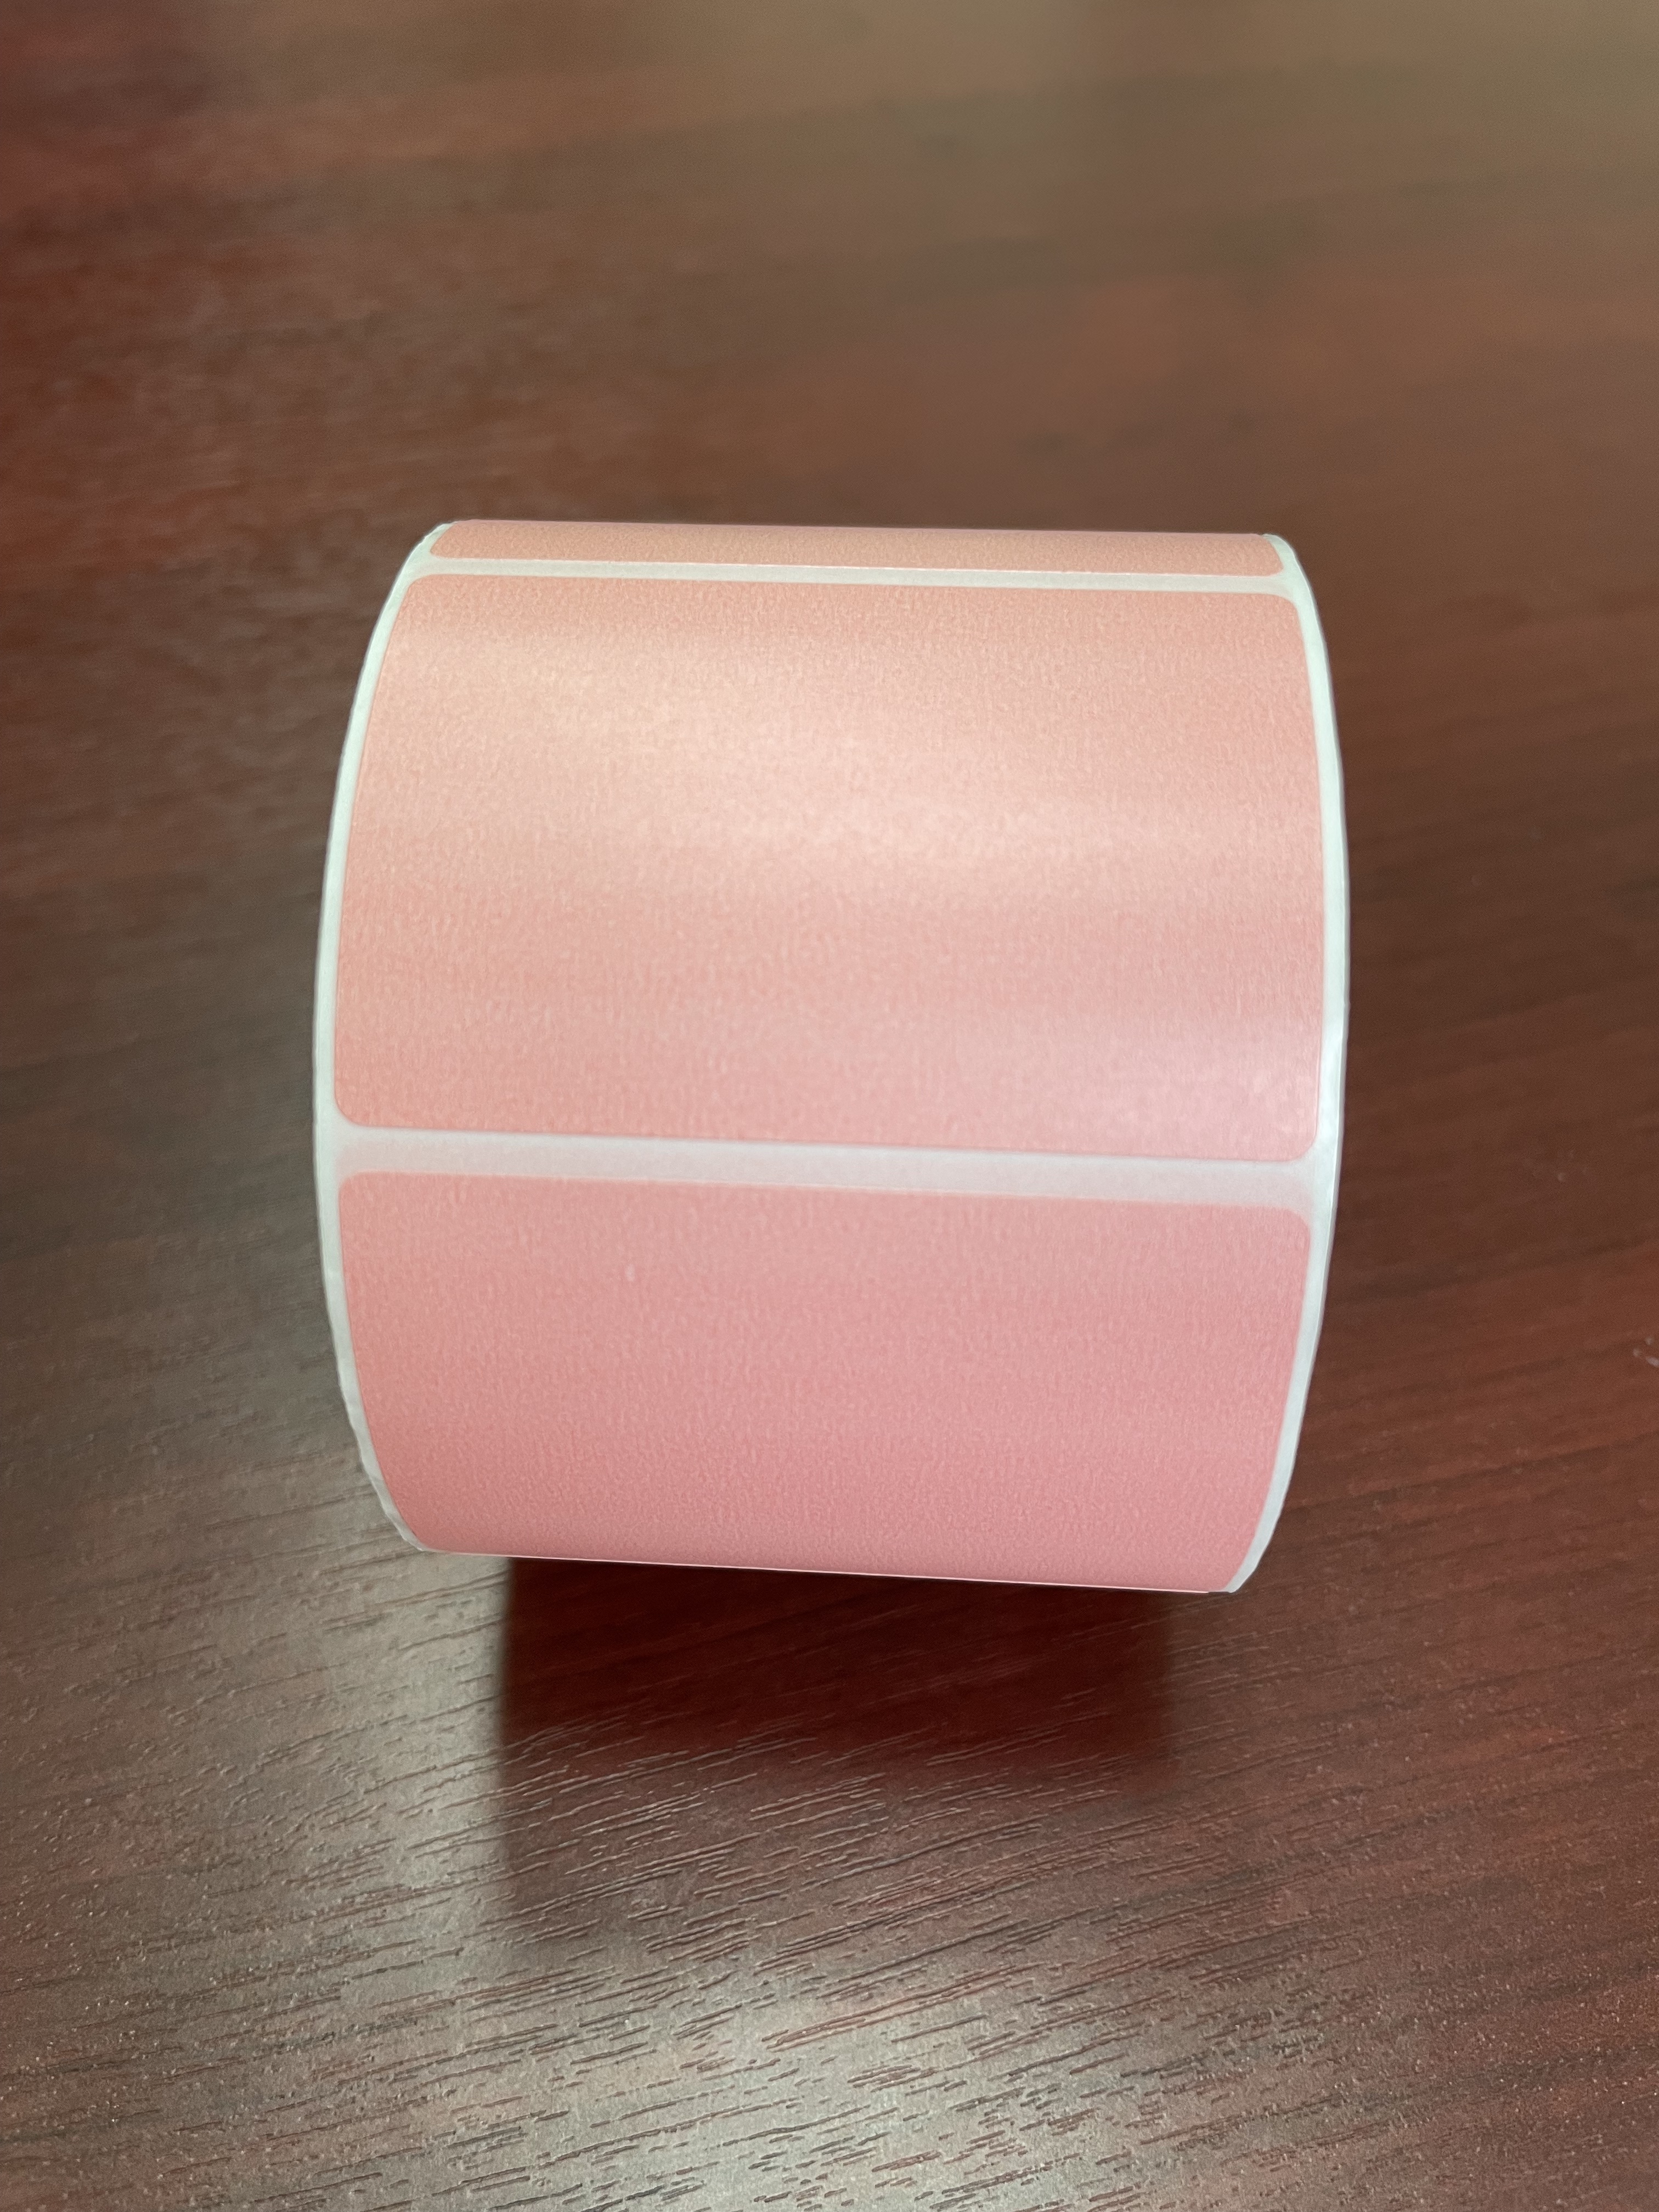 Фото 2 Этикетка 58х40 мм (700 шт. в рулоне) термо ЭКО, розовая, 250 ₽ за упаковку 1000 рулонов